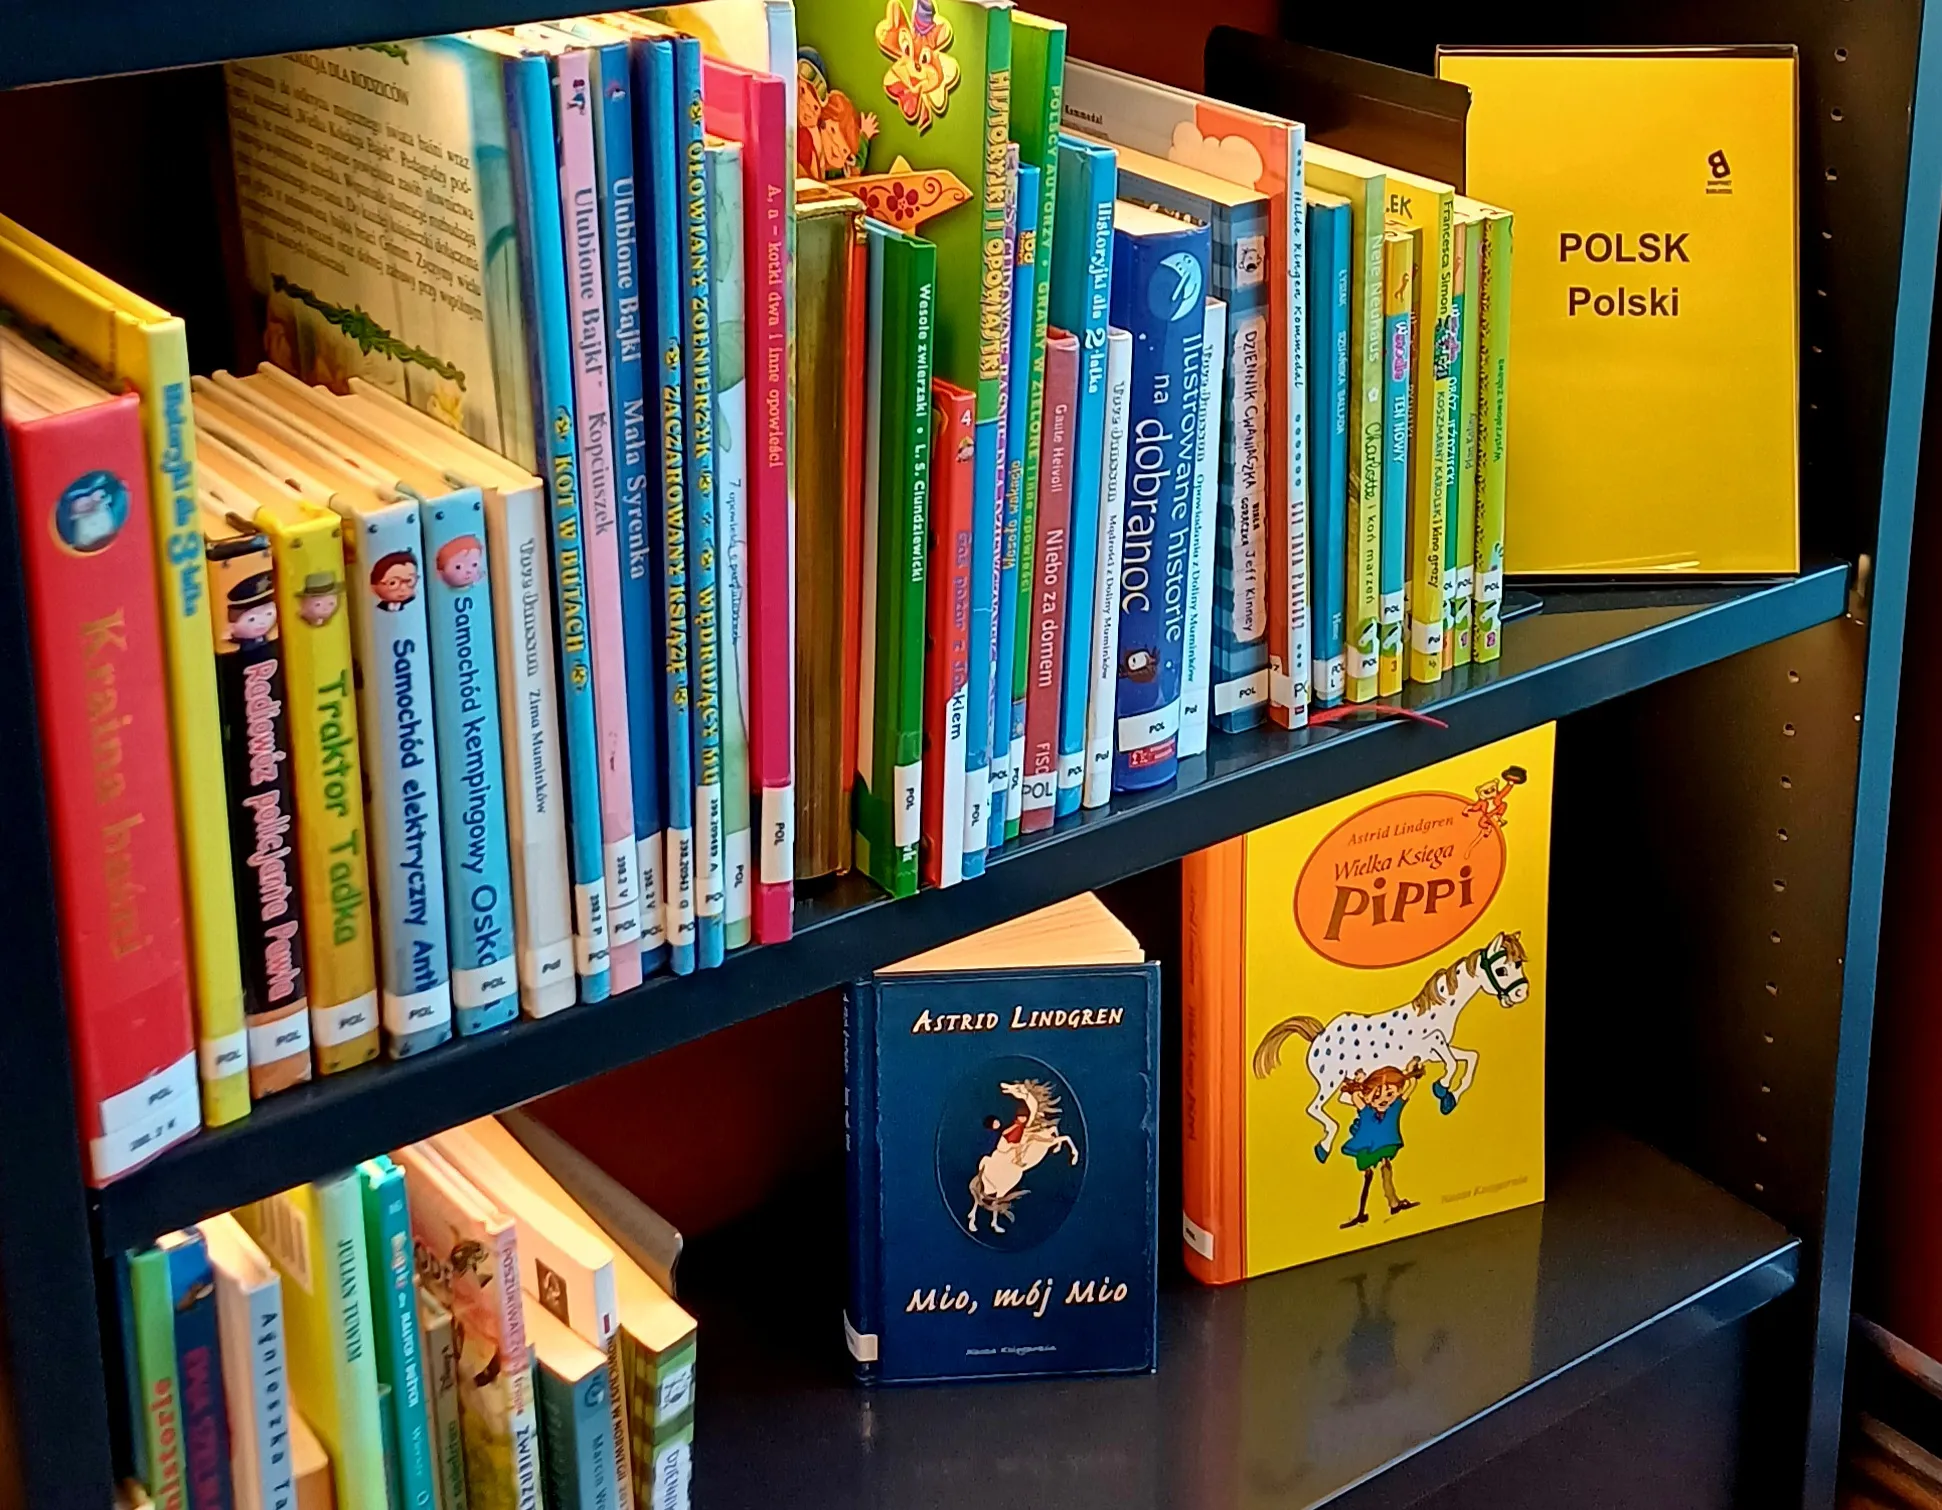 Knihy v polštině v norské knihovně: Vícejazyčná knihovna dostupná všem